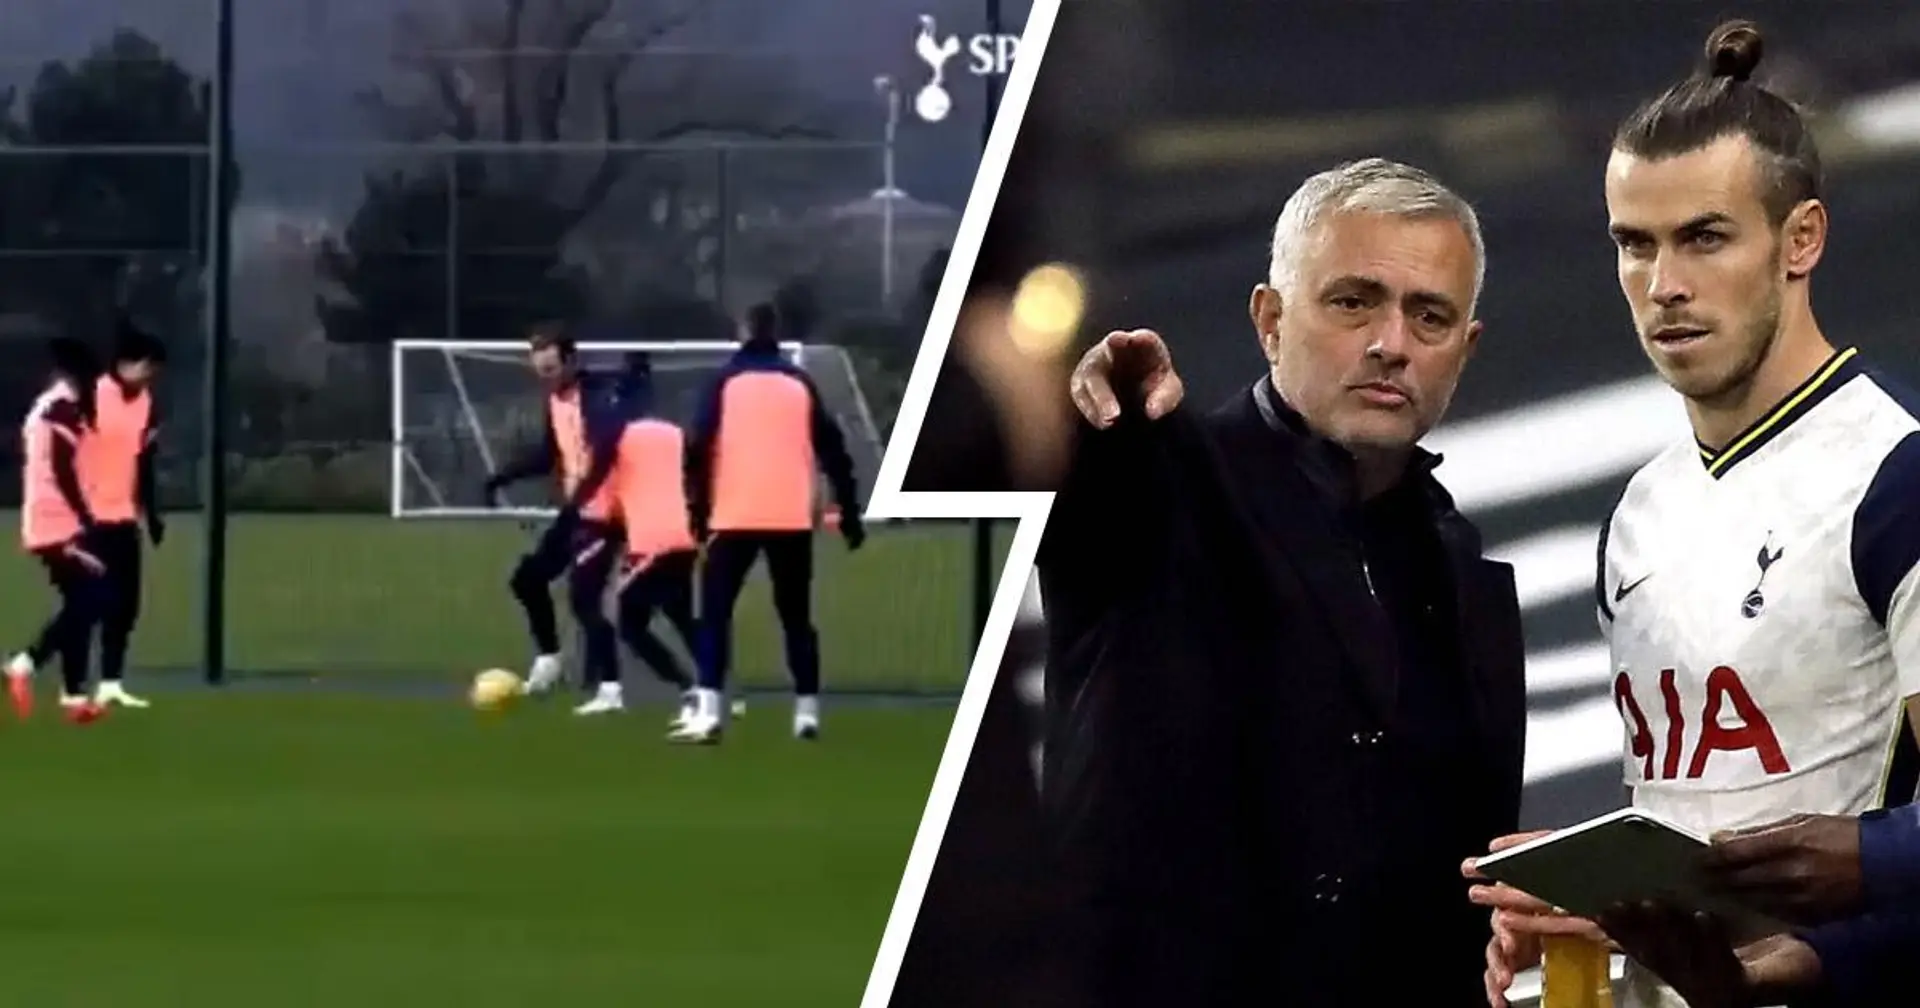 José Mourinho a été surpris en train de dire "tu veux rester ici ou aller à Madrid et ne pas jouer au football?" lors d'une séance d'entraînement de Tottenham 